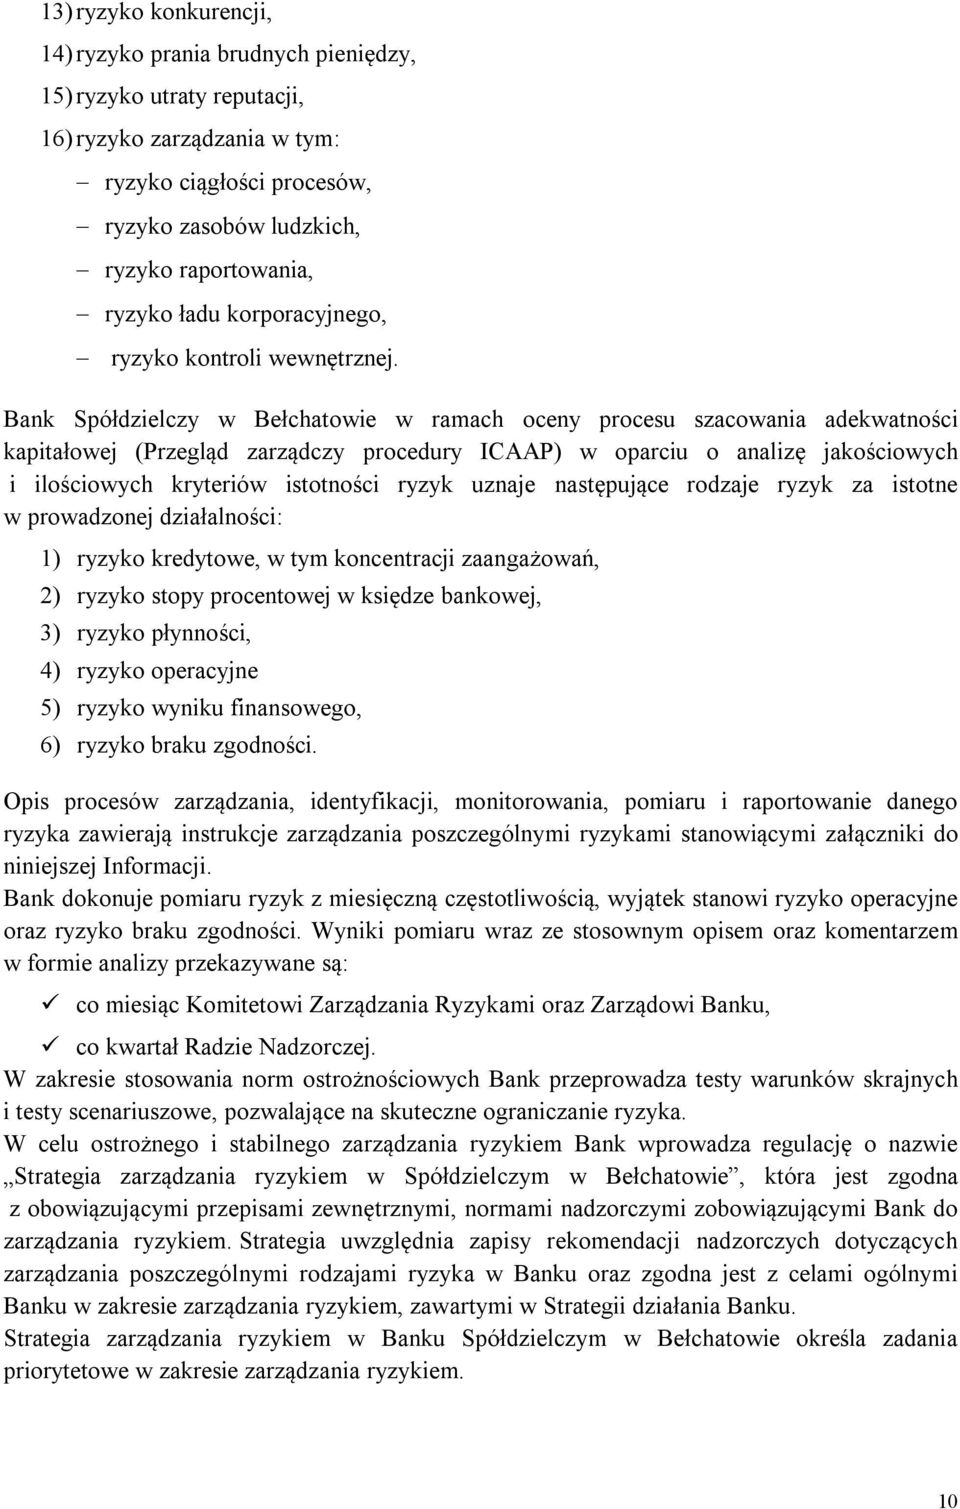 Bank Spółdzielczy w Bełchatowie w ramach oceny procesu szacowania adekwatności kapitałowej (Przegląd zarządczy procedury ICAAP) w oparciu o analizę jakościowych i ilościowych kryteriów istotności